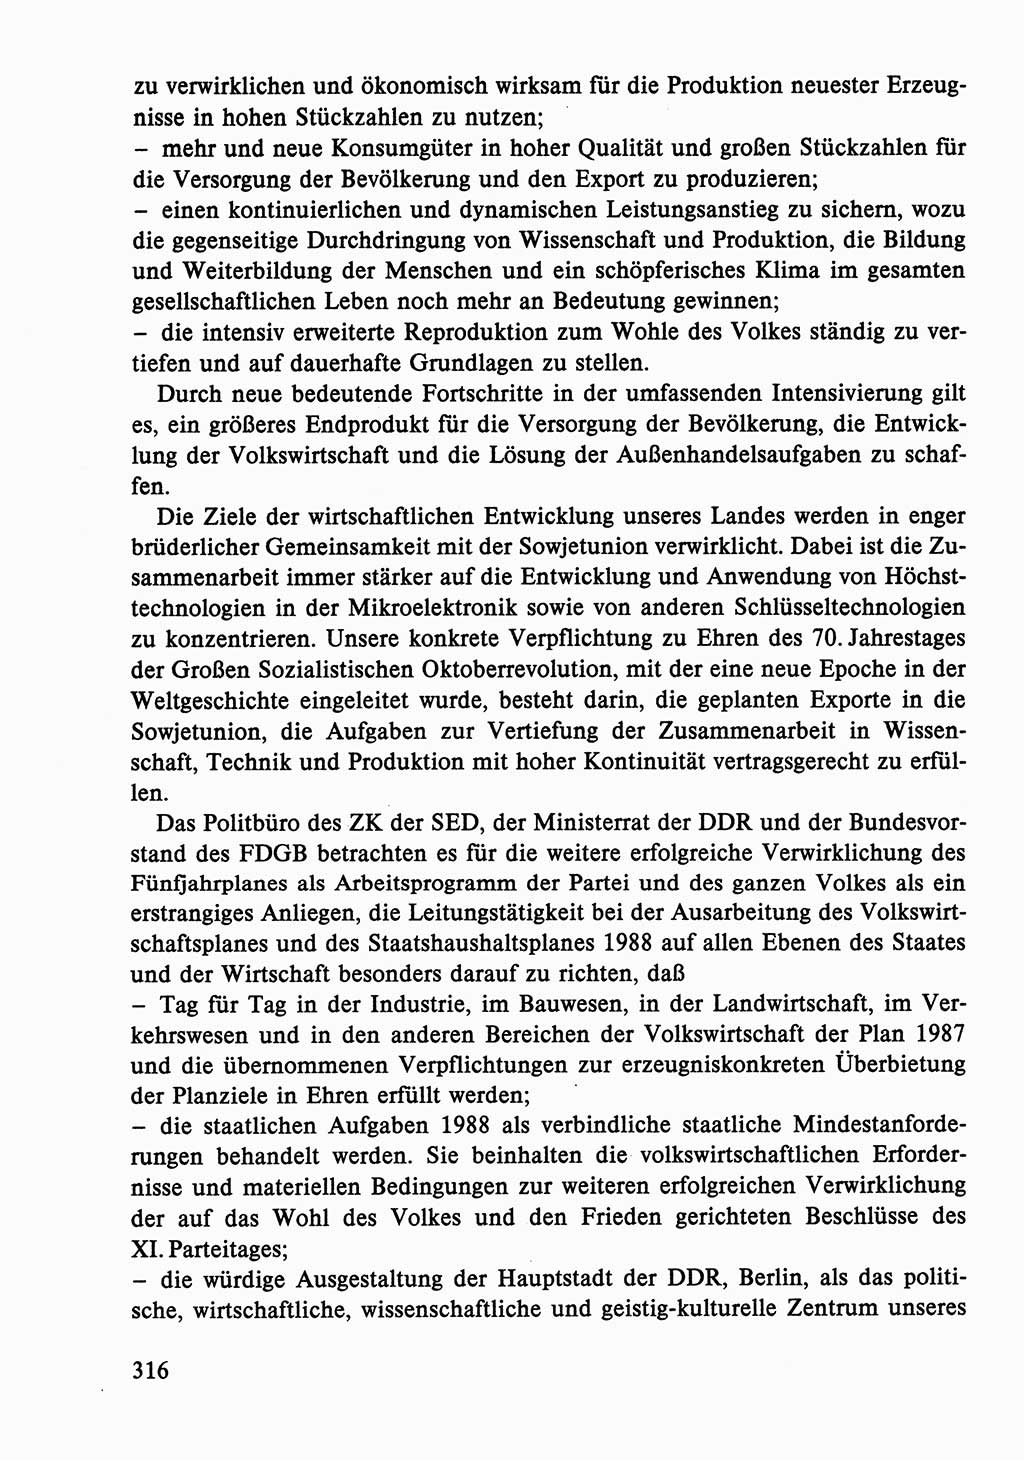 Dokumente der Sozialistischen Einheitspartei Deutschlands (SED) [Deutsche Demokratische Republik (DDR)] 1986-1987, Seite 316 (Dok. SED DDR 1986-1987, S. 316)